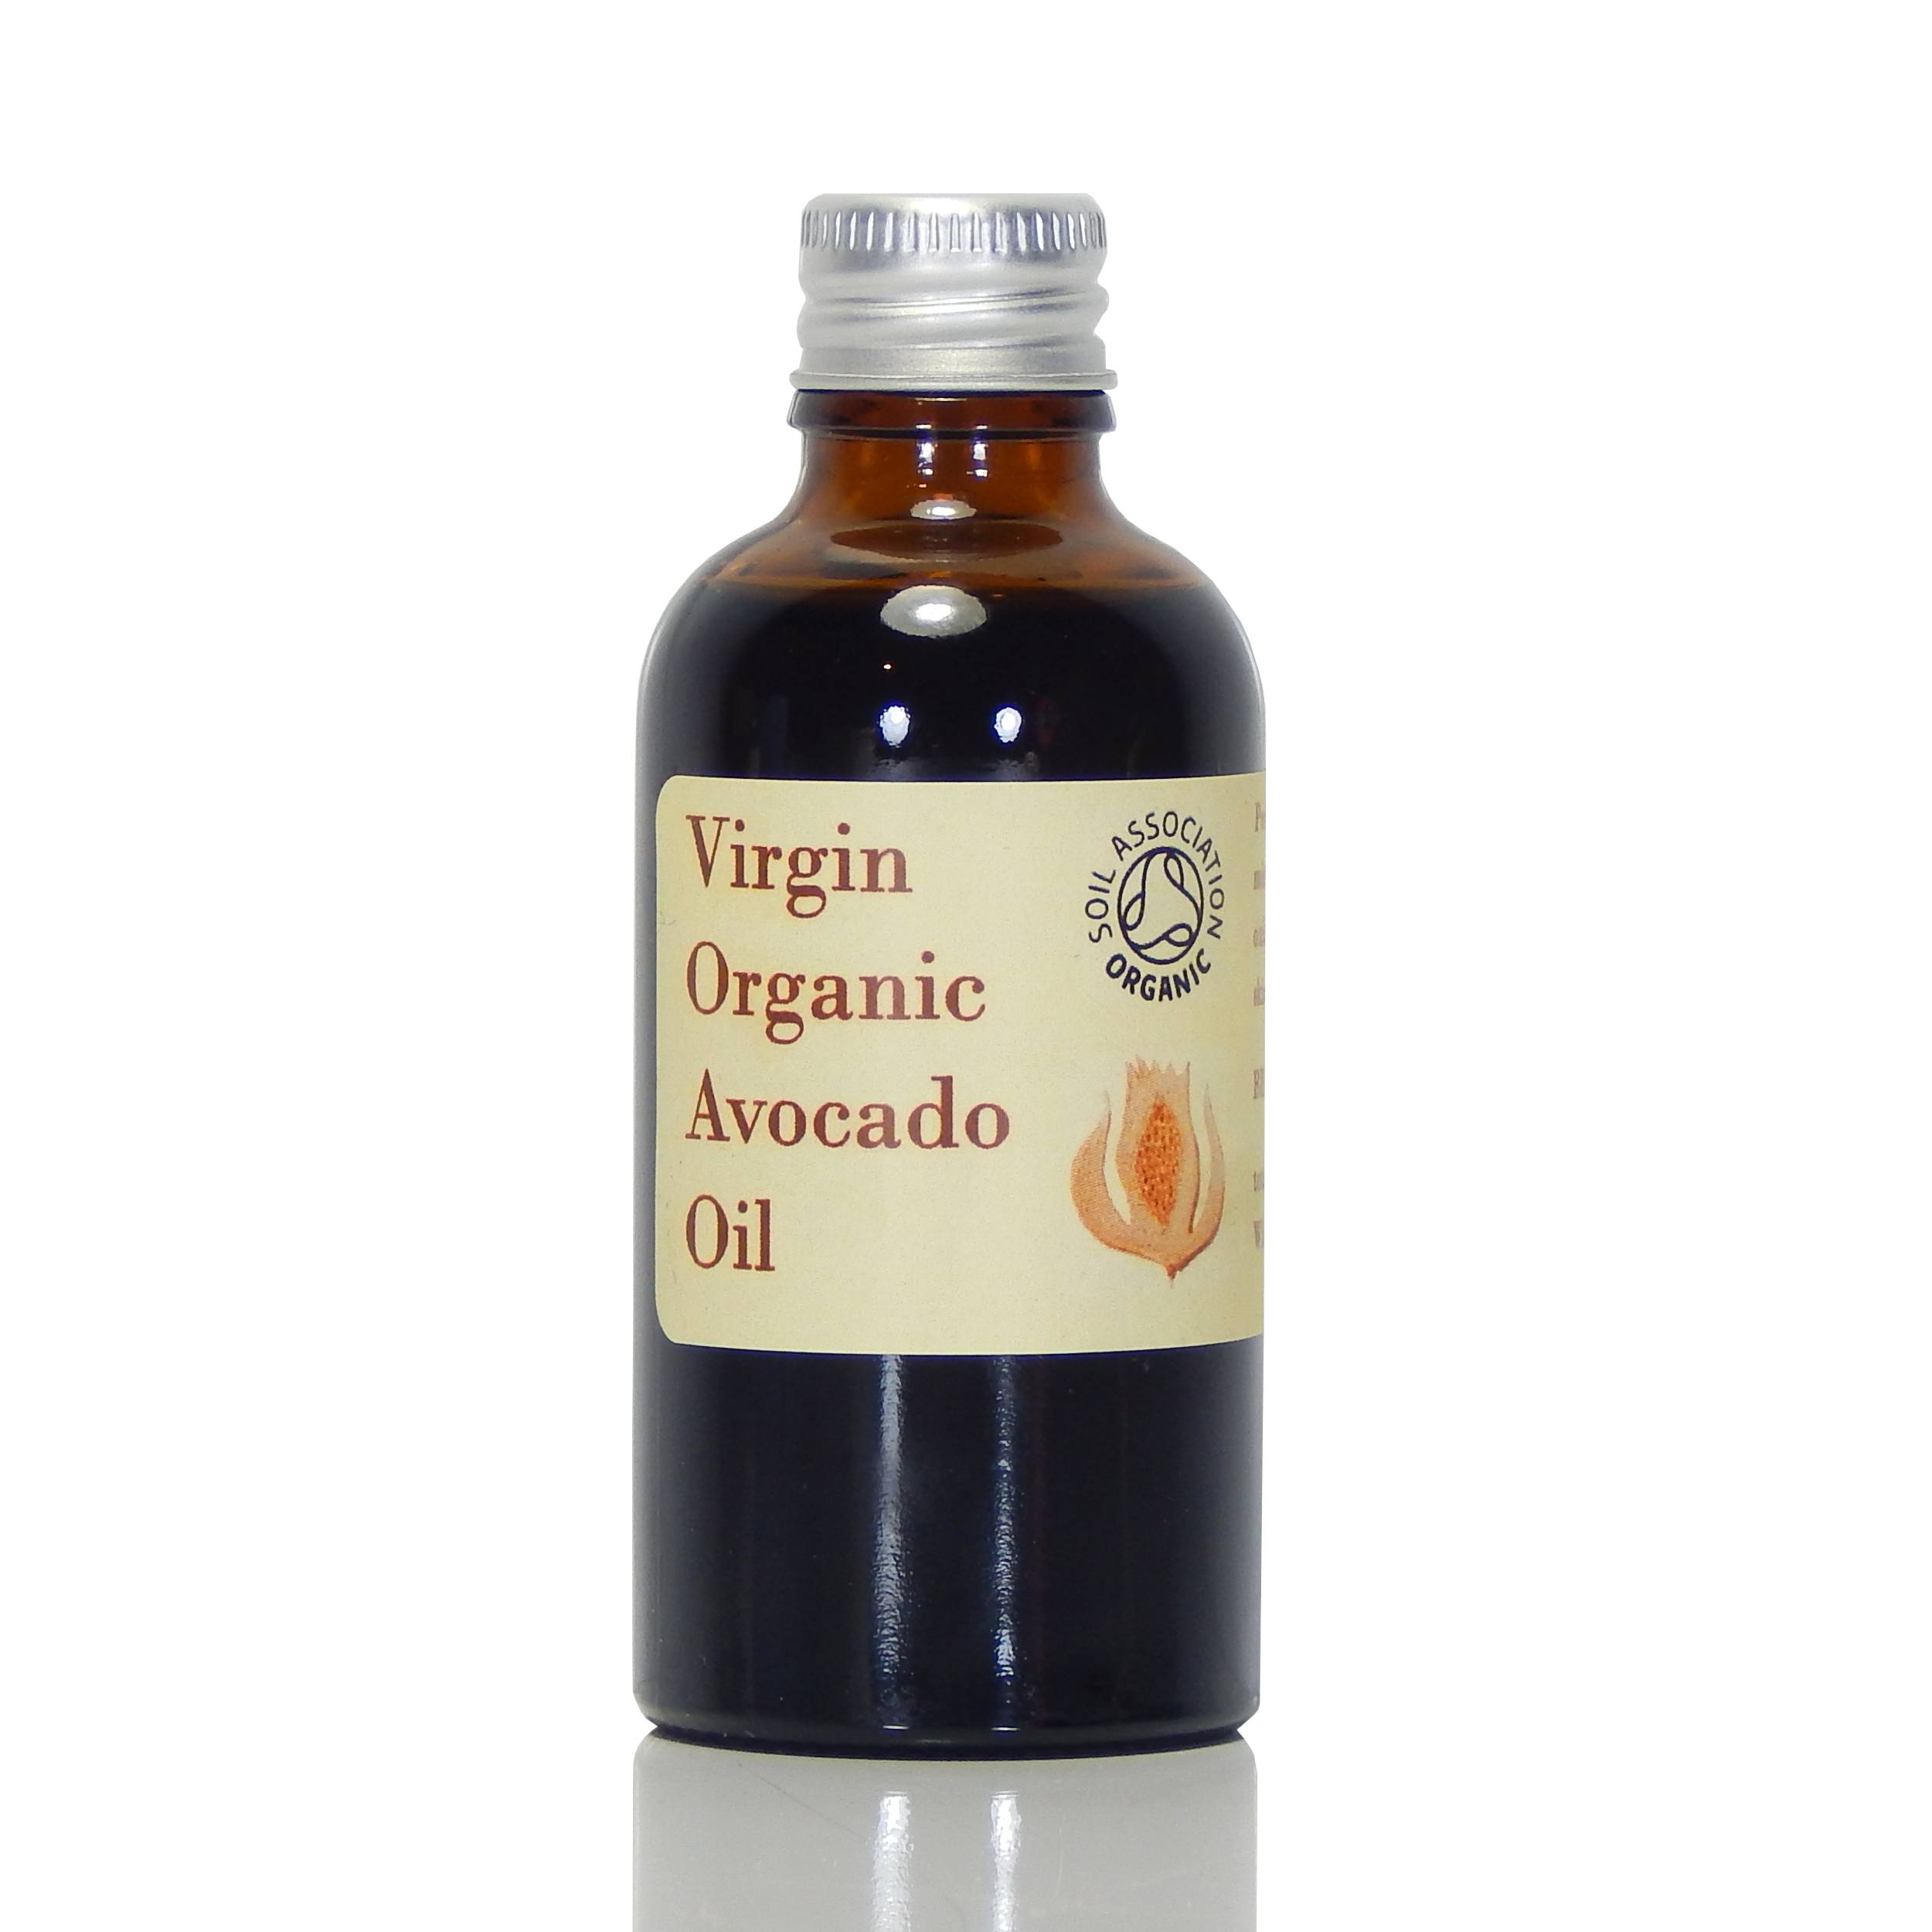 Avocado Oil (virgin, organic)